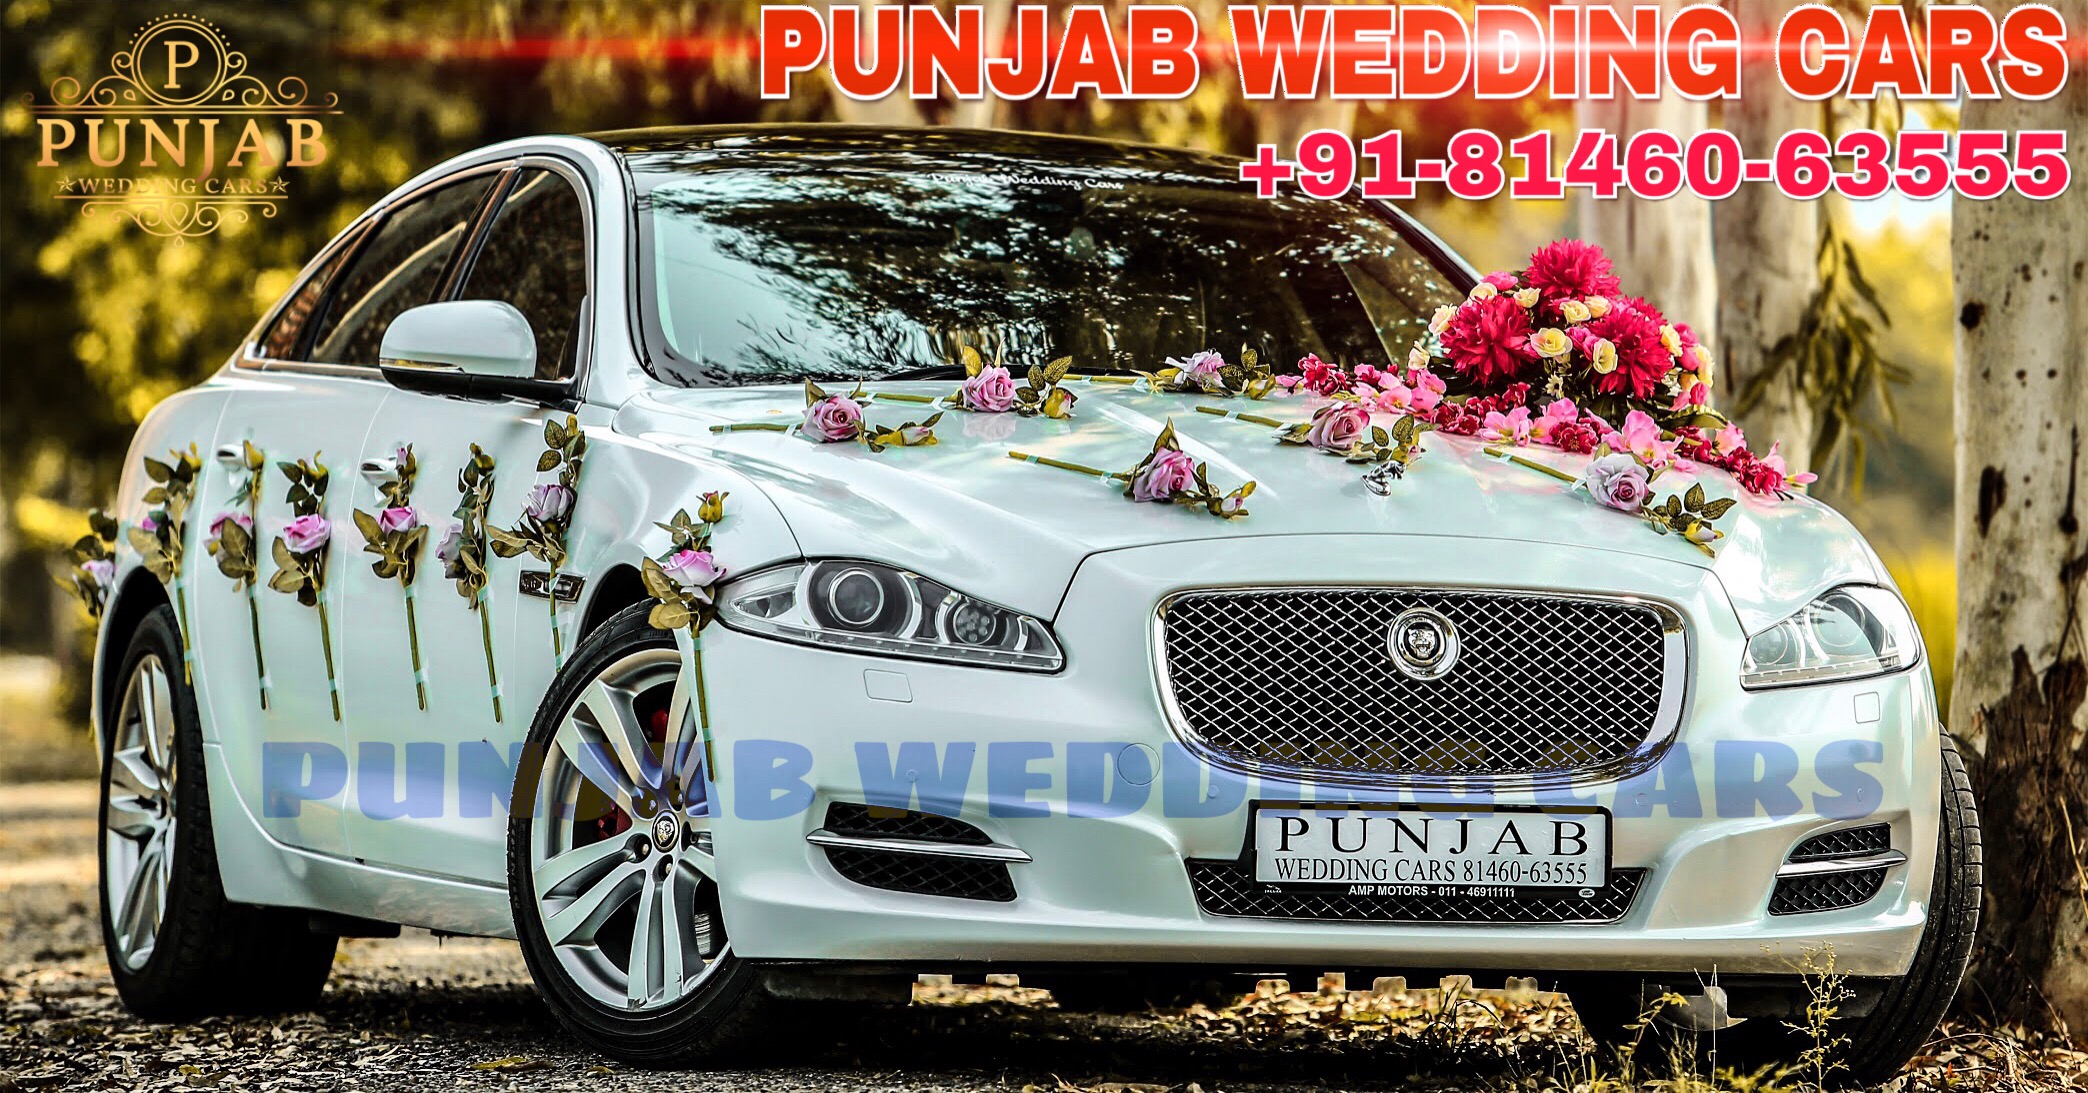 WEDDING CARS - Jaguar XJL wedding cars Punjab Available in Chandigarh, Jalandhar, Ludhiana, Amritsar, Barnala, Bathinda, Hoshiarpur, Faridkot, Fatehgarh Sahib, Fazilka, Firozpur, Gurdaspur, Kapurthala, Mansa, Moga, Ajitgarh, Ropar, Muktsar, Shahid Bhagat Singh Nagar(first known as Nawan Shahr), Sangrur, Patiala, Pathankot, Tarn Taran